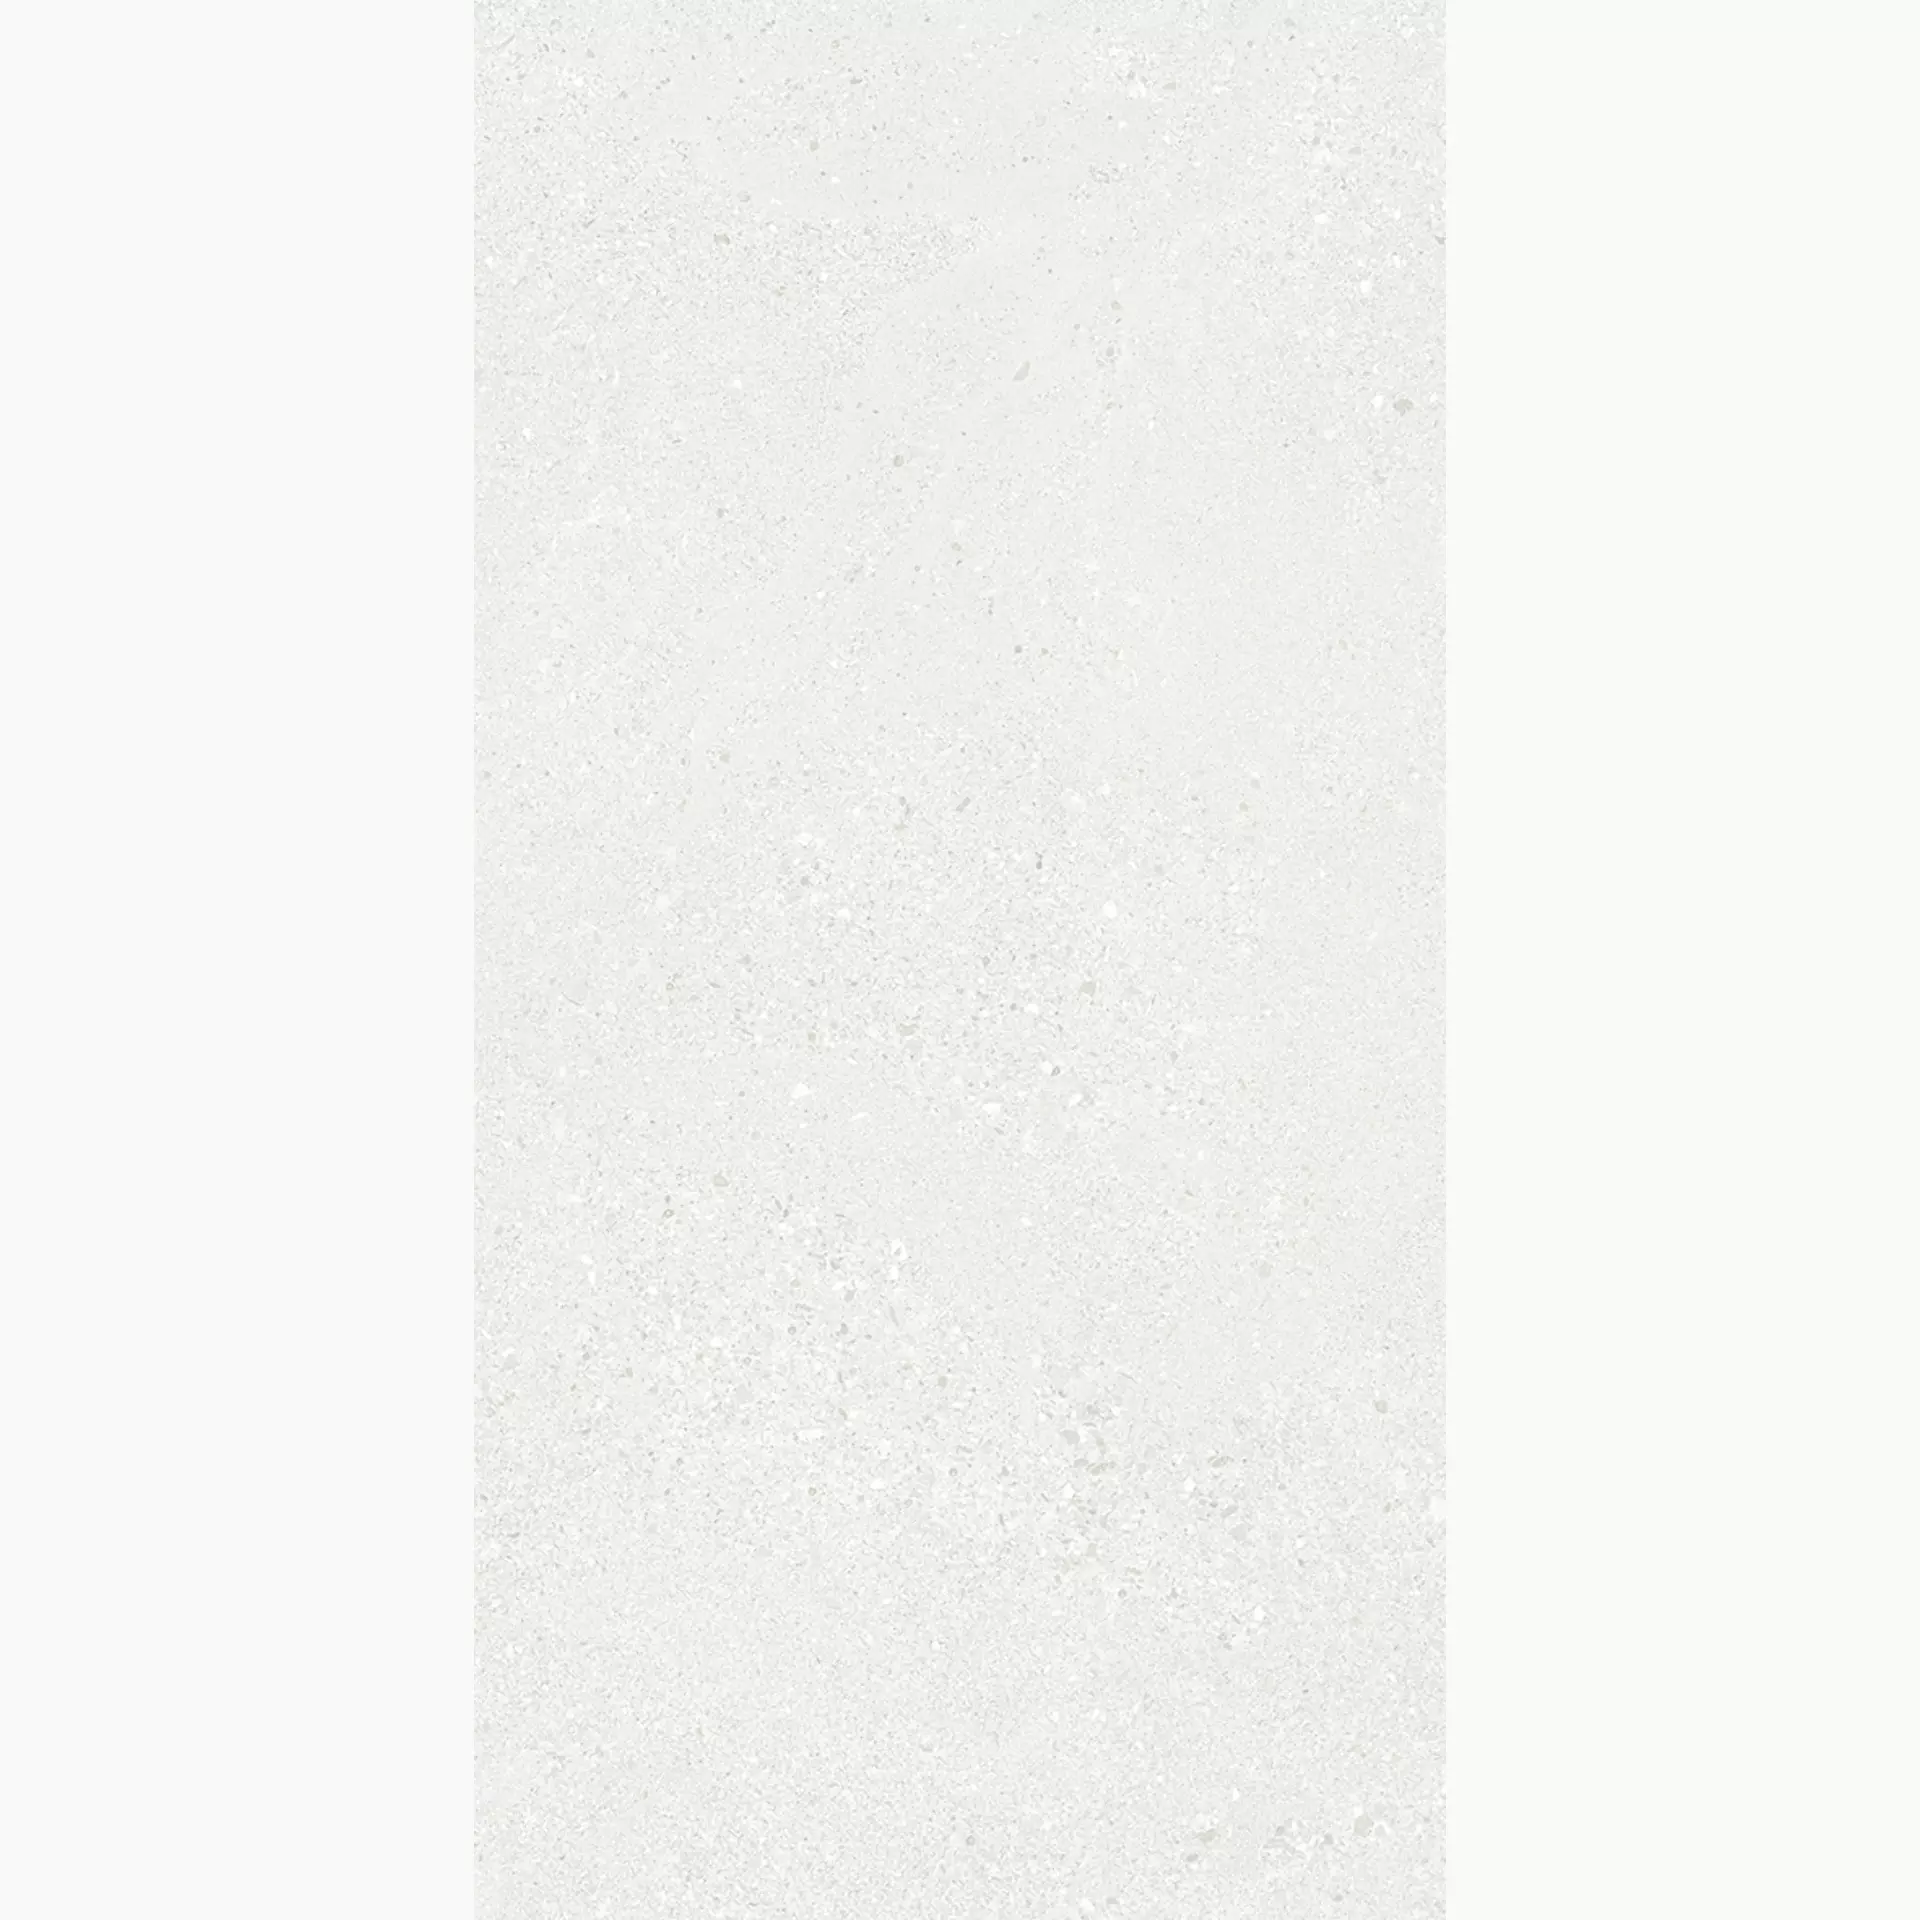 Ergon Grain Stone Rough Grain White Naturale E0AV 60x120cm rectified 9,5mm